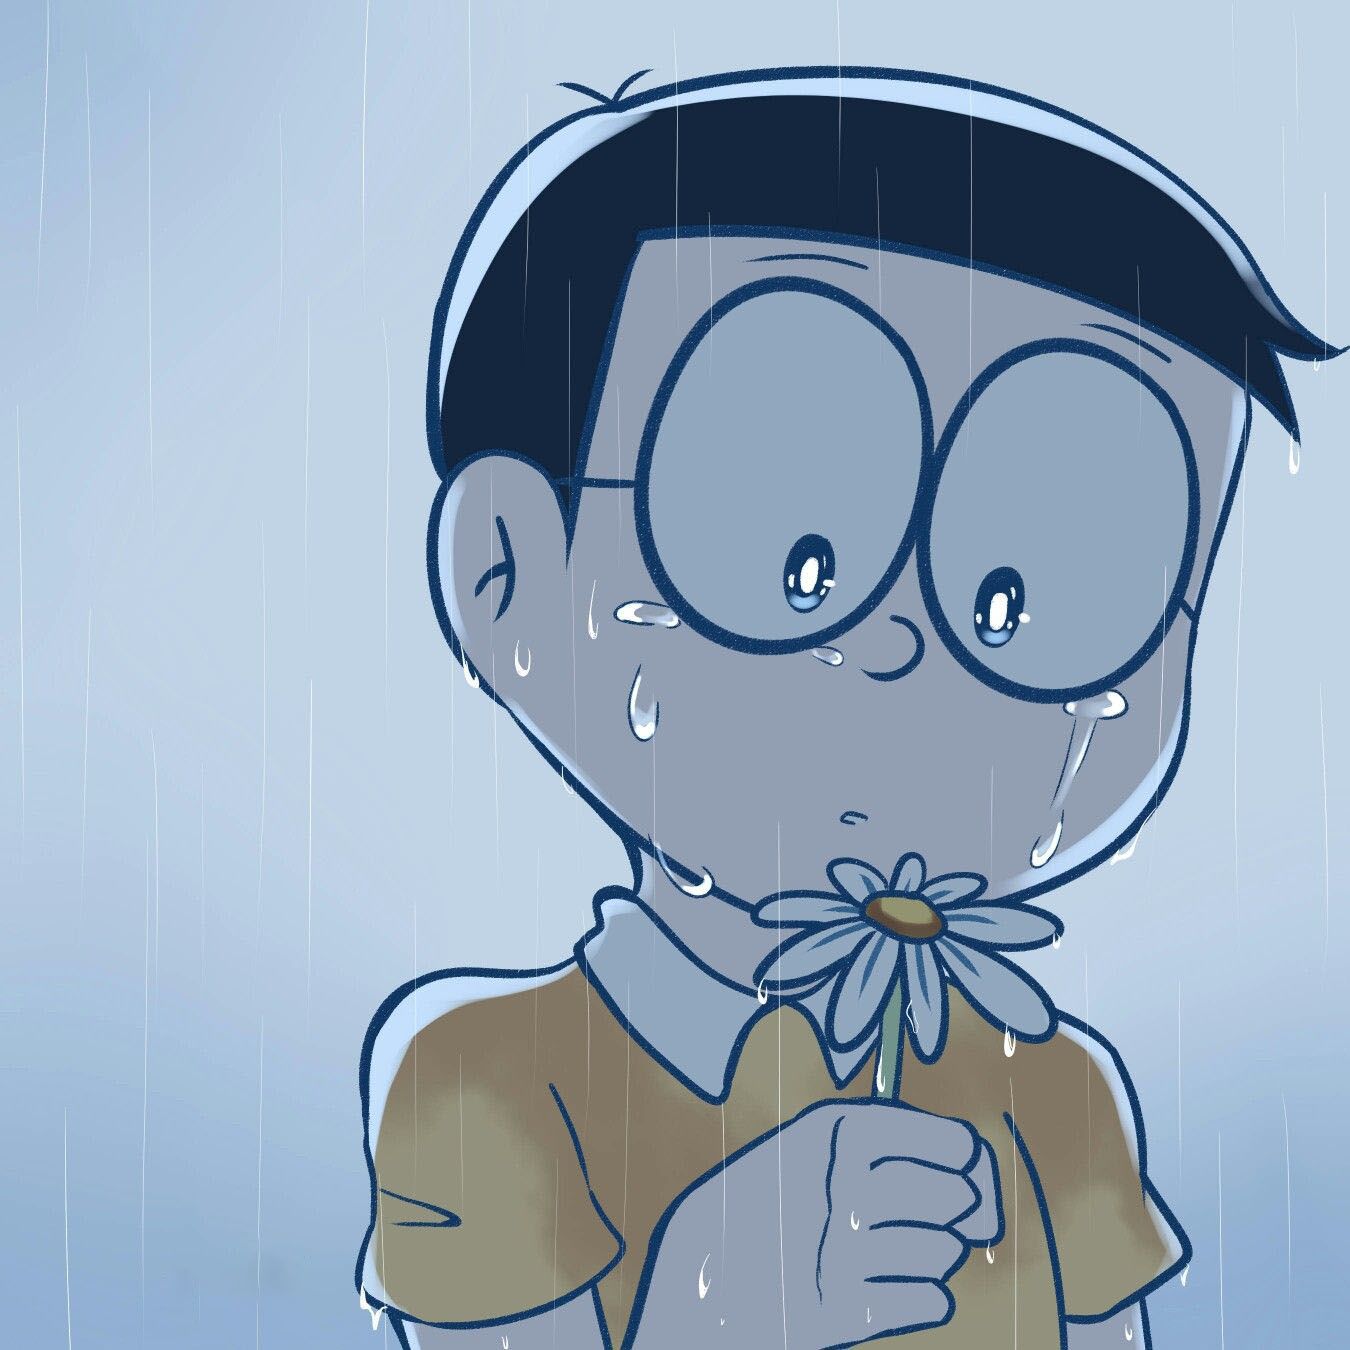 Ảnh Nobita: Ảnh Nobita sẽ đưa bạn trở lại tuổi thơ của mình, một thời điểm đẹp nhất trong cuộc đời. Hãy cùng nhìn lại những thước phim của nhân vật ưa thích này và khơi gợi những kỷ niệm tuyệt vời về thời thơ ấu của bạn.